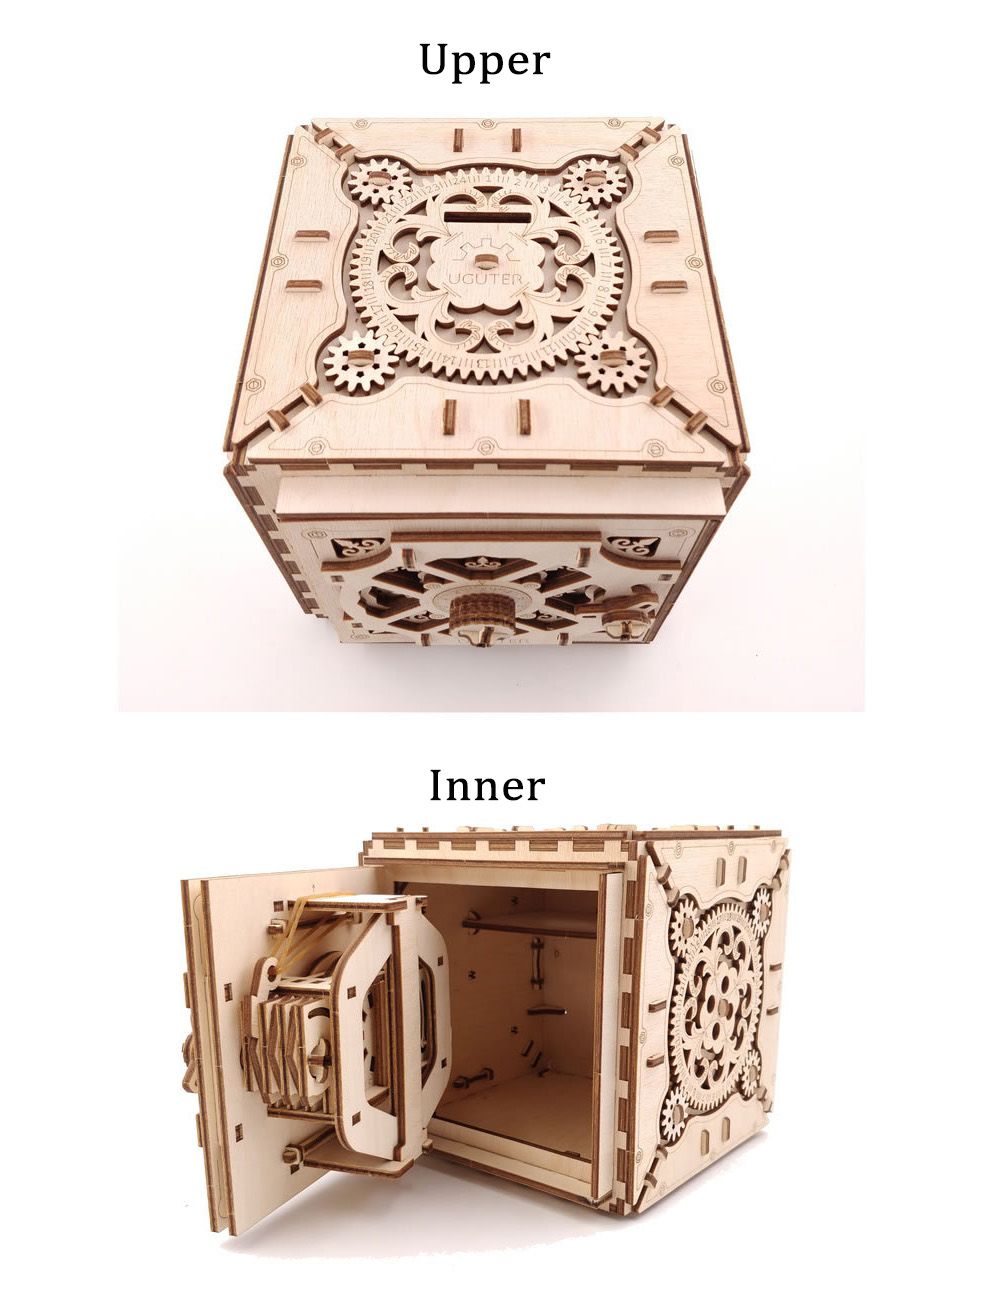 3D-Antique-Self-Assembly-Wooden-Password-Box-Saving-Money-Storage-Laser-Cut-Parts-Puzzle-Building-Ki-1535560